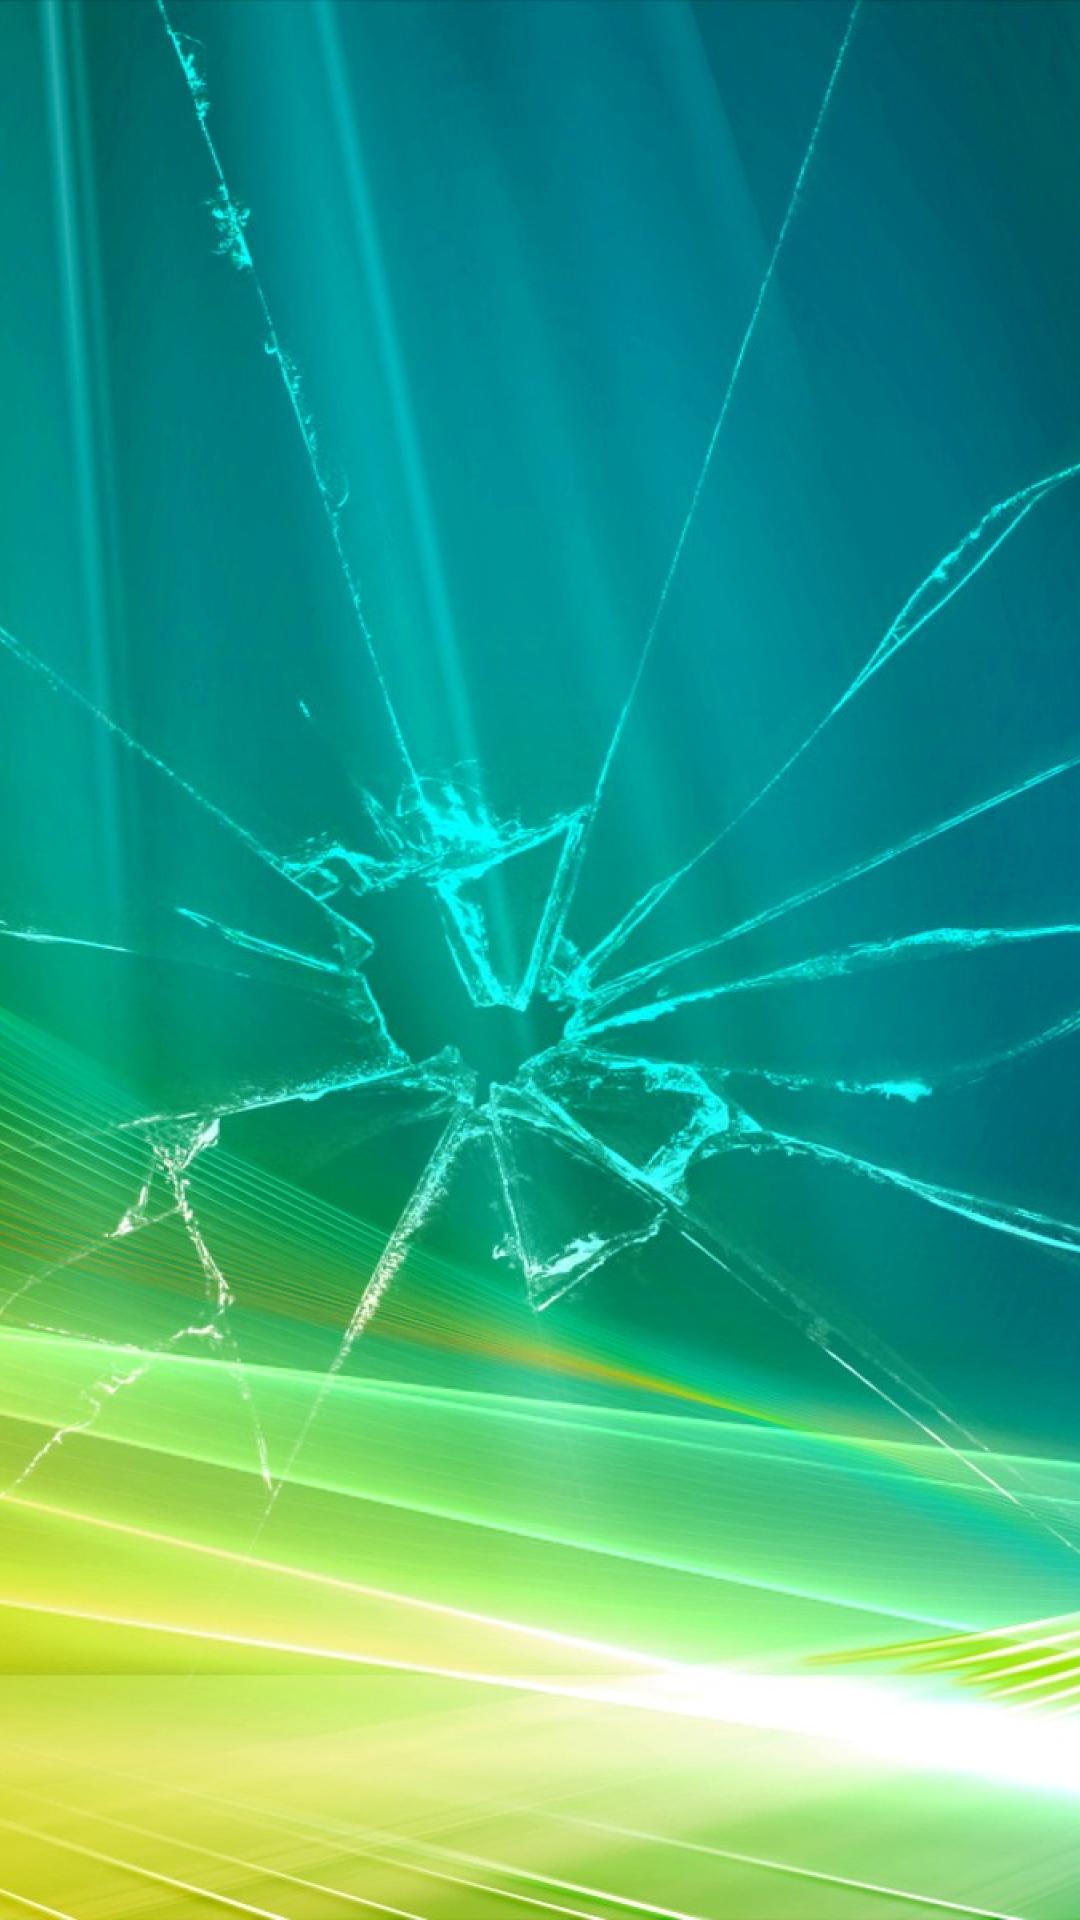 Bio shock 2 broken glass iphone 1080x1920 wallpaper